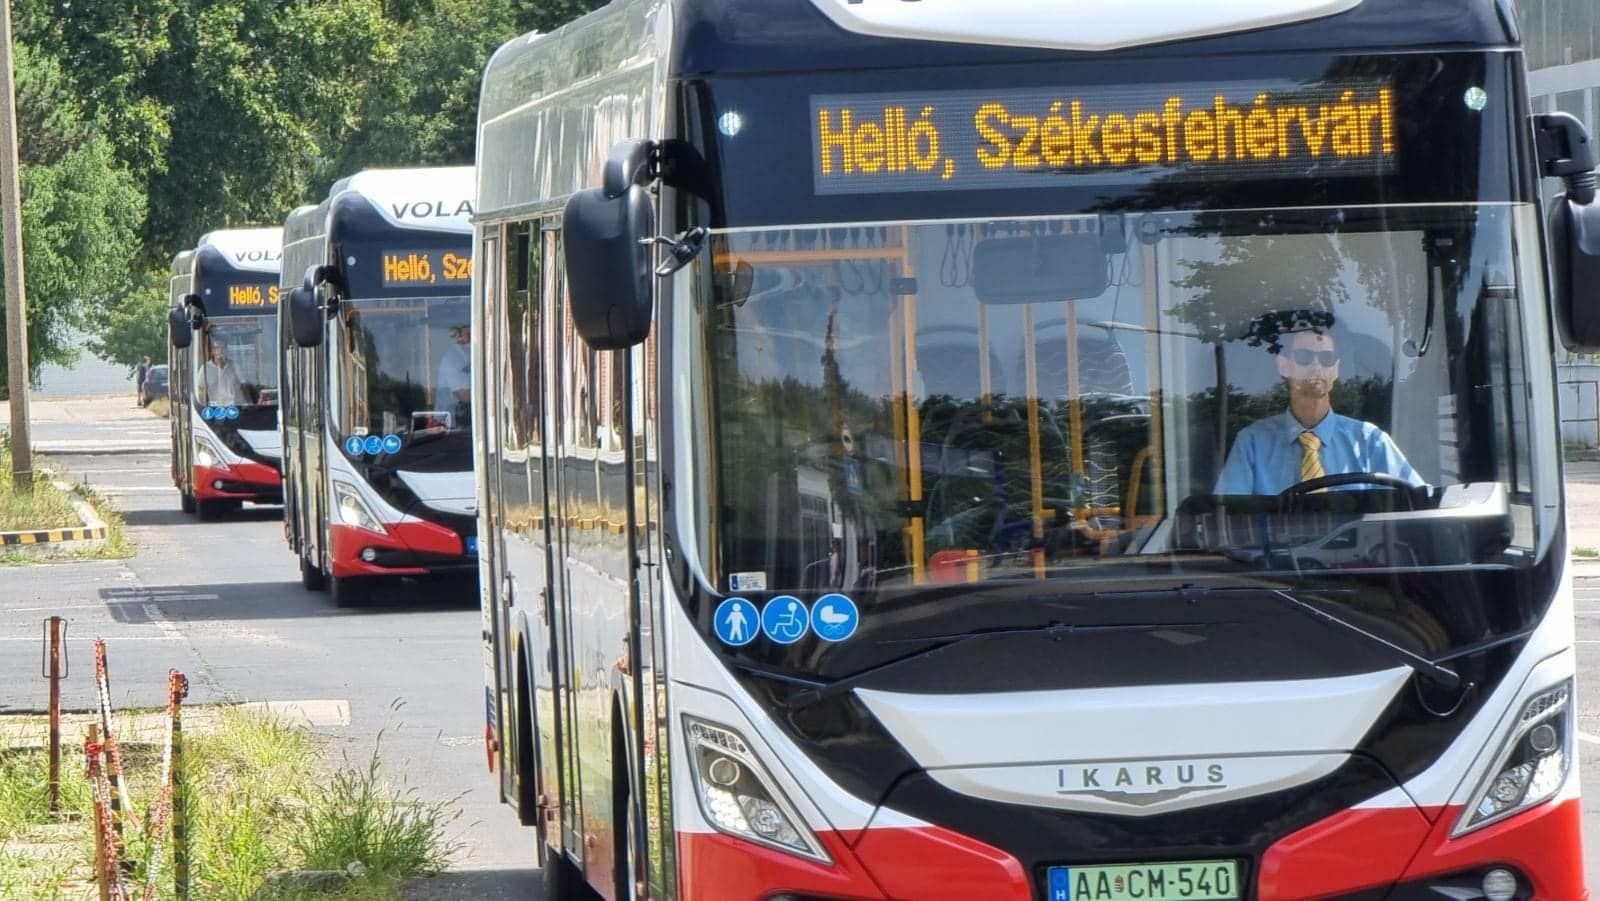 Újabb három elektromos busz áll szolgálatba hétfőtől Székesfehérváron